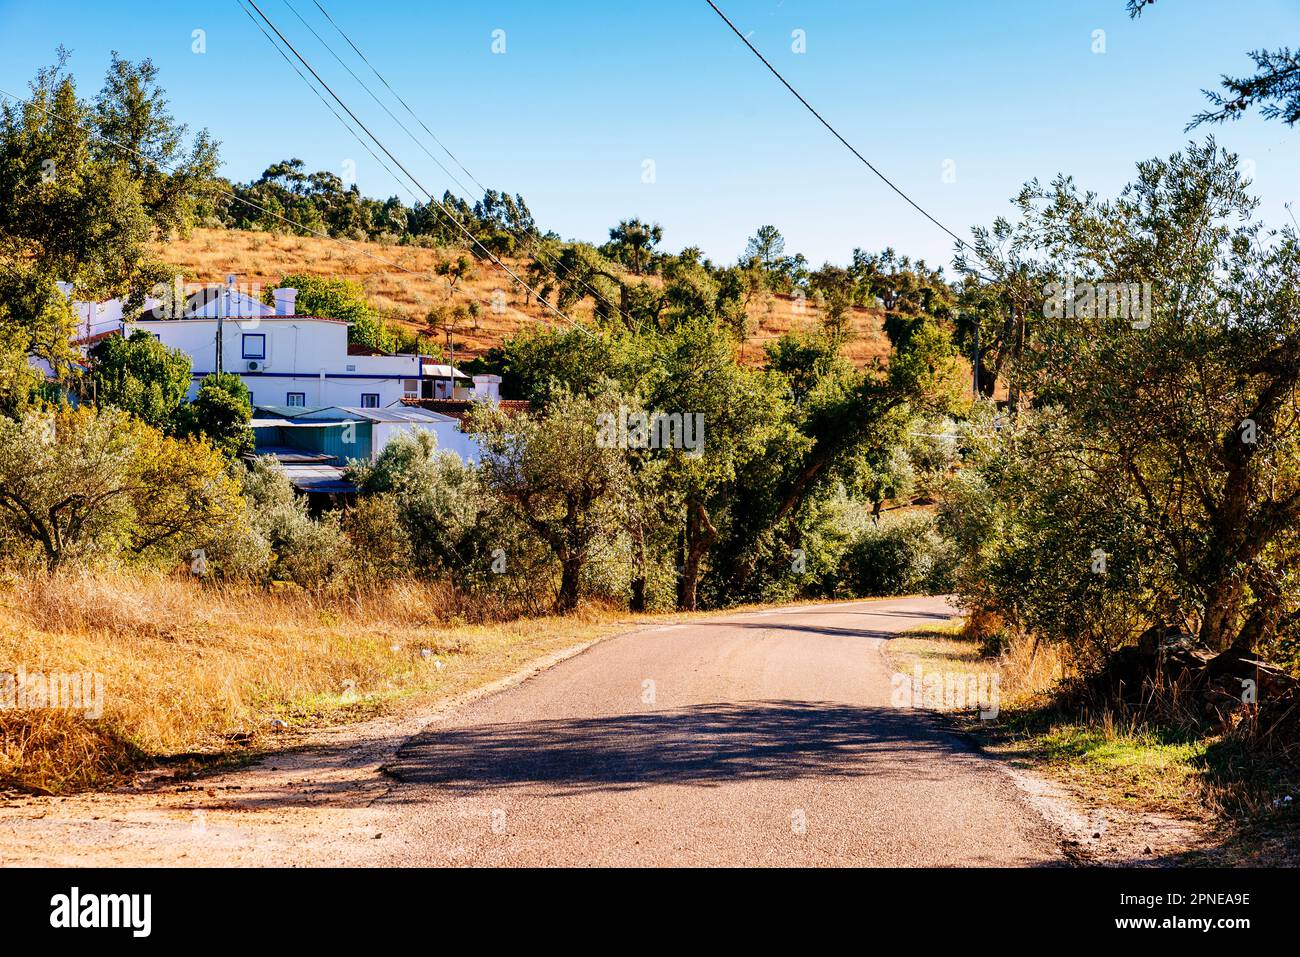 The village of El Marco, Esperança, Arronches, Alto Alentejo, Portalegre, Portugal, Europe Stock Photo